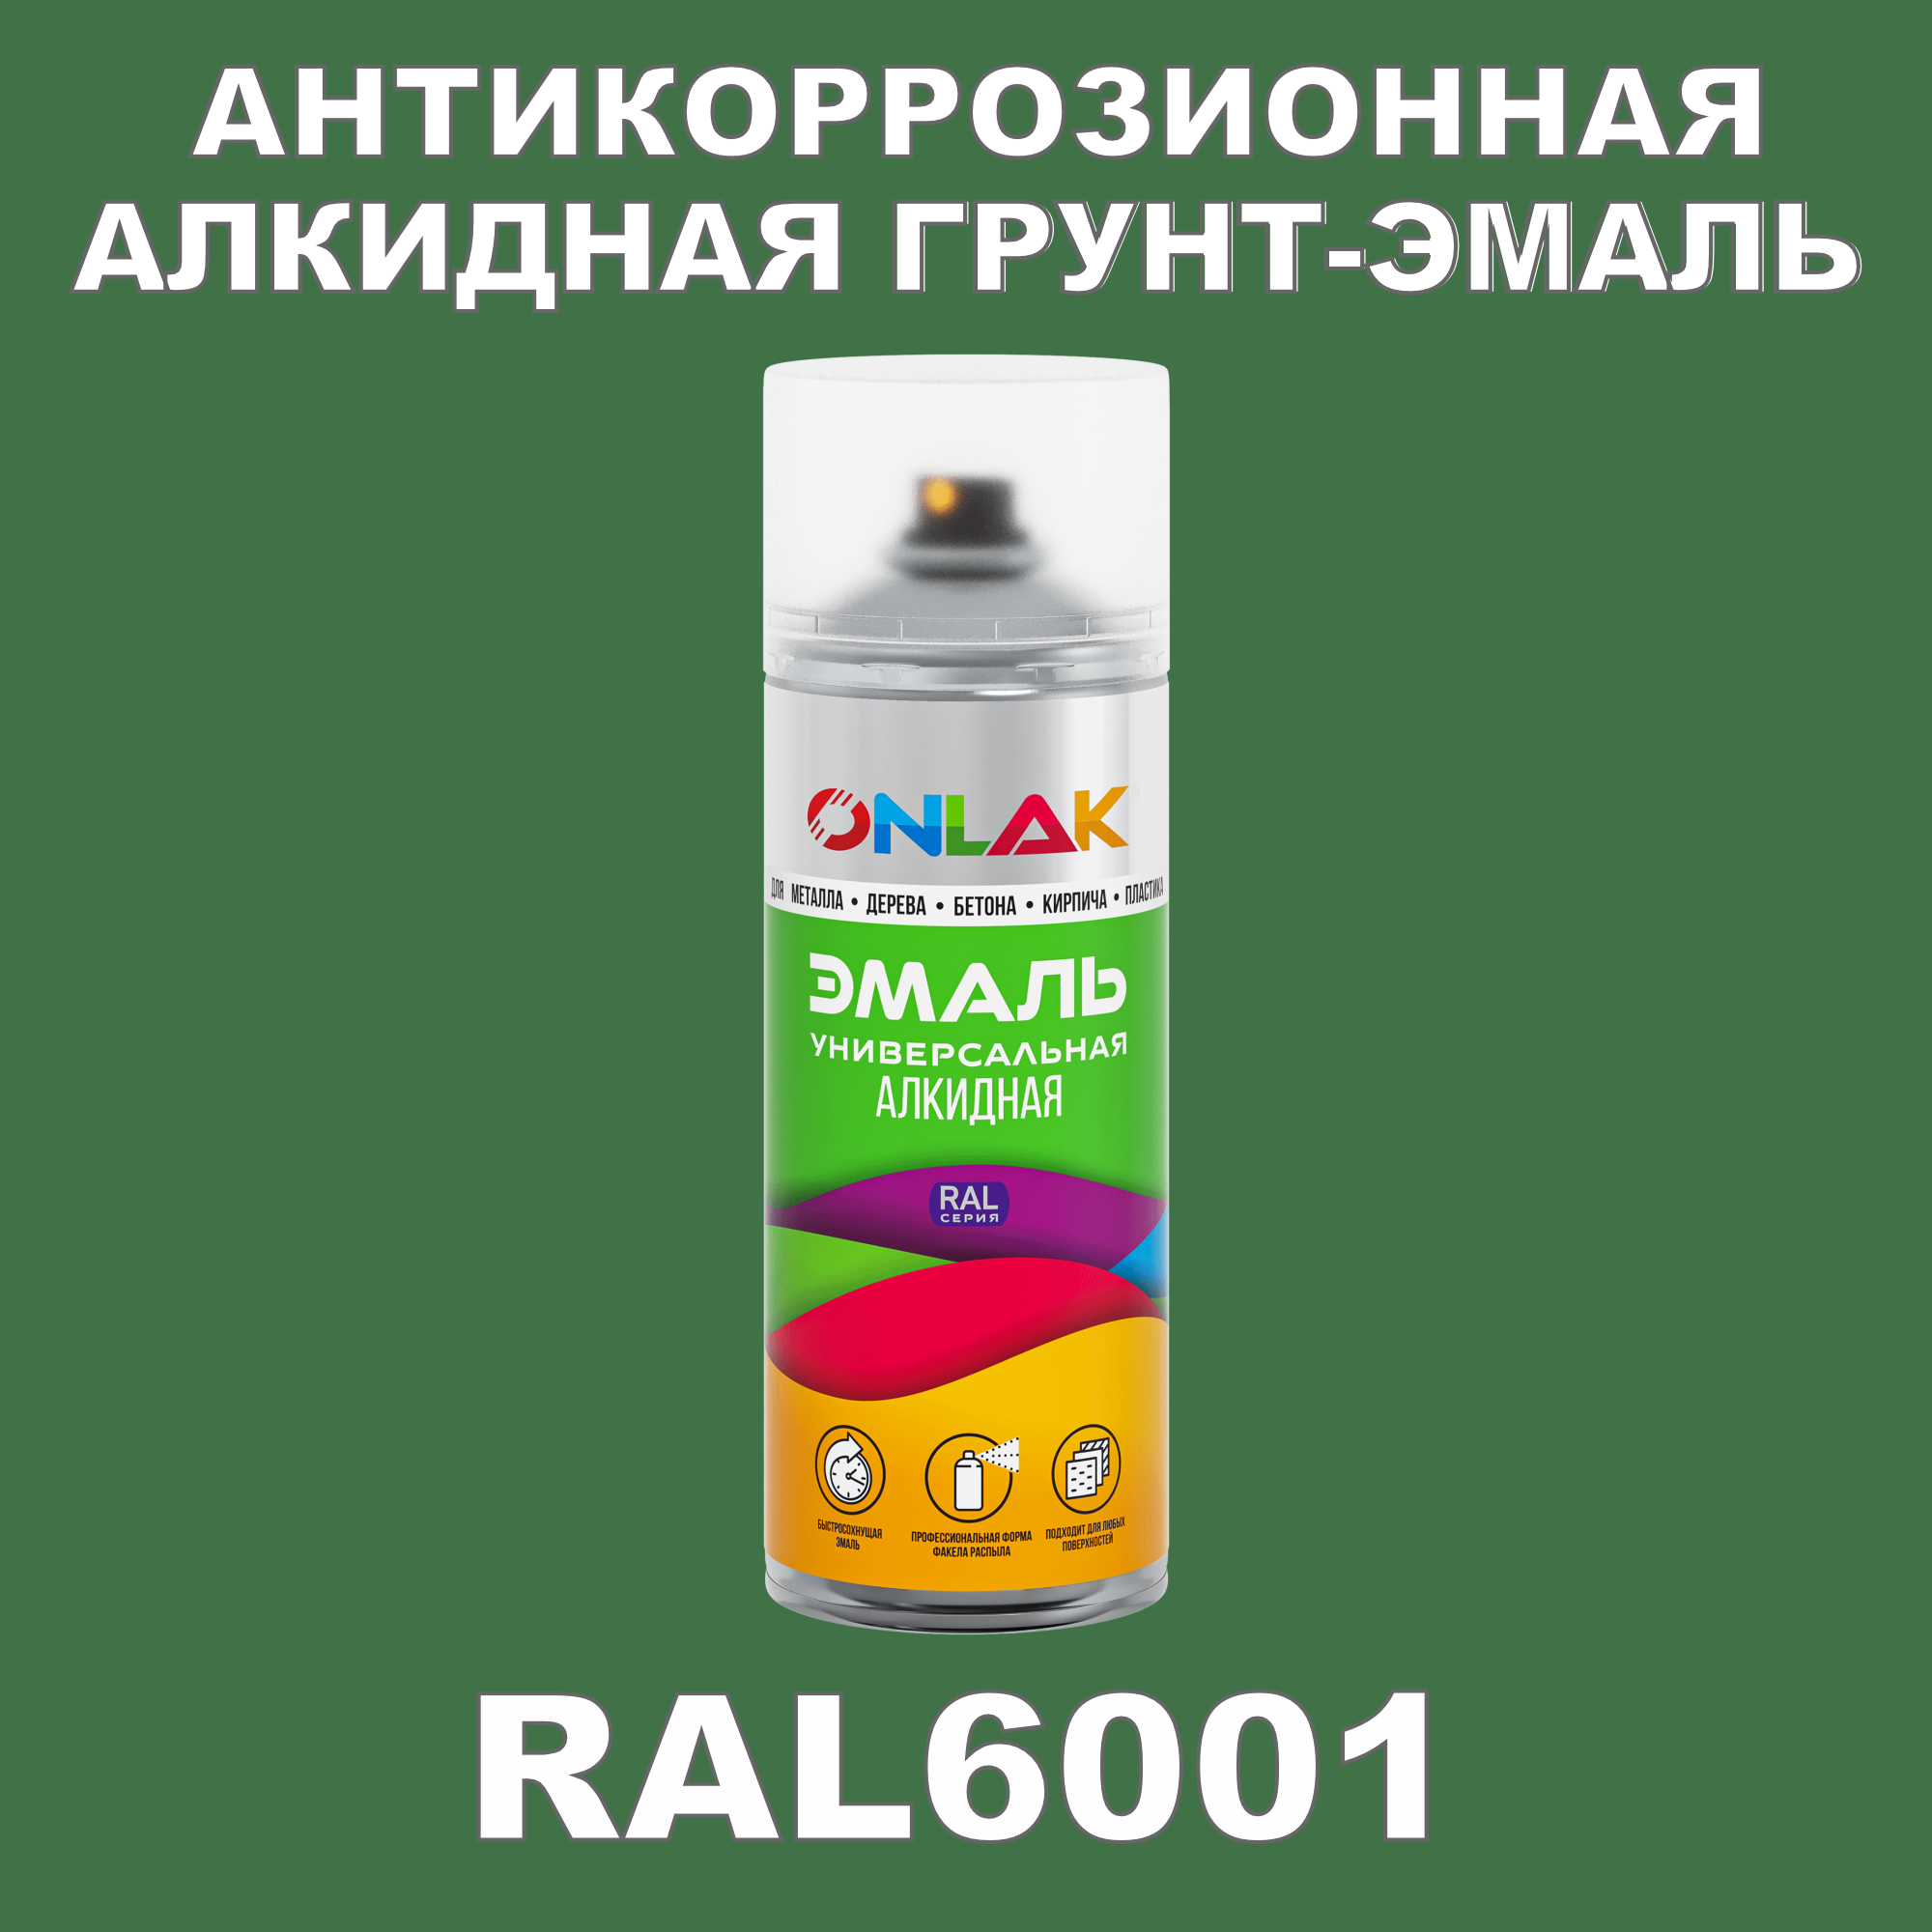 Антикоррозионная грунт-эмаль ONLAK RAL 6001,зеленый,556 мл фильтр для краскопульта scentury 30 mesh зеленый